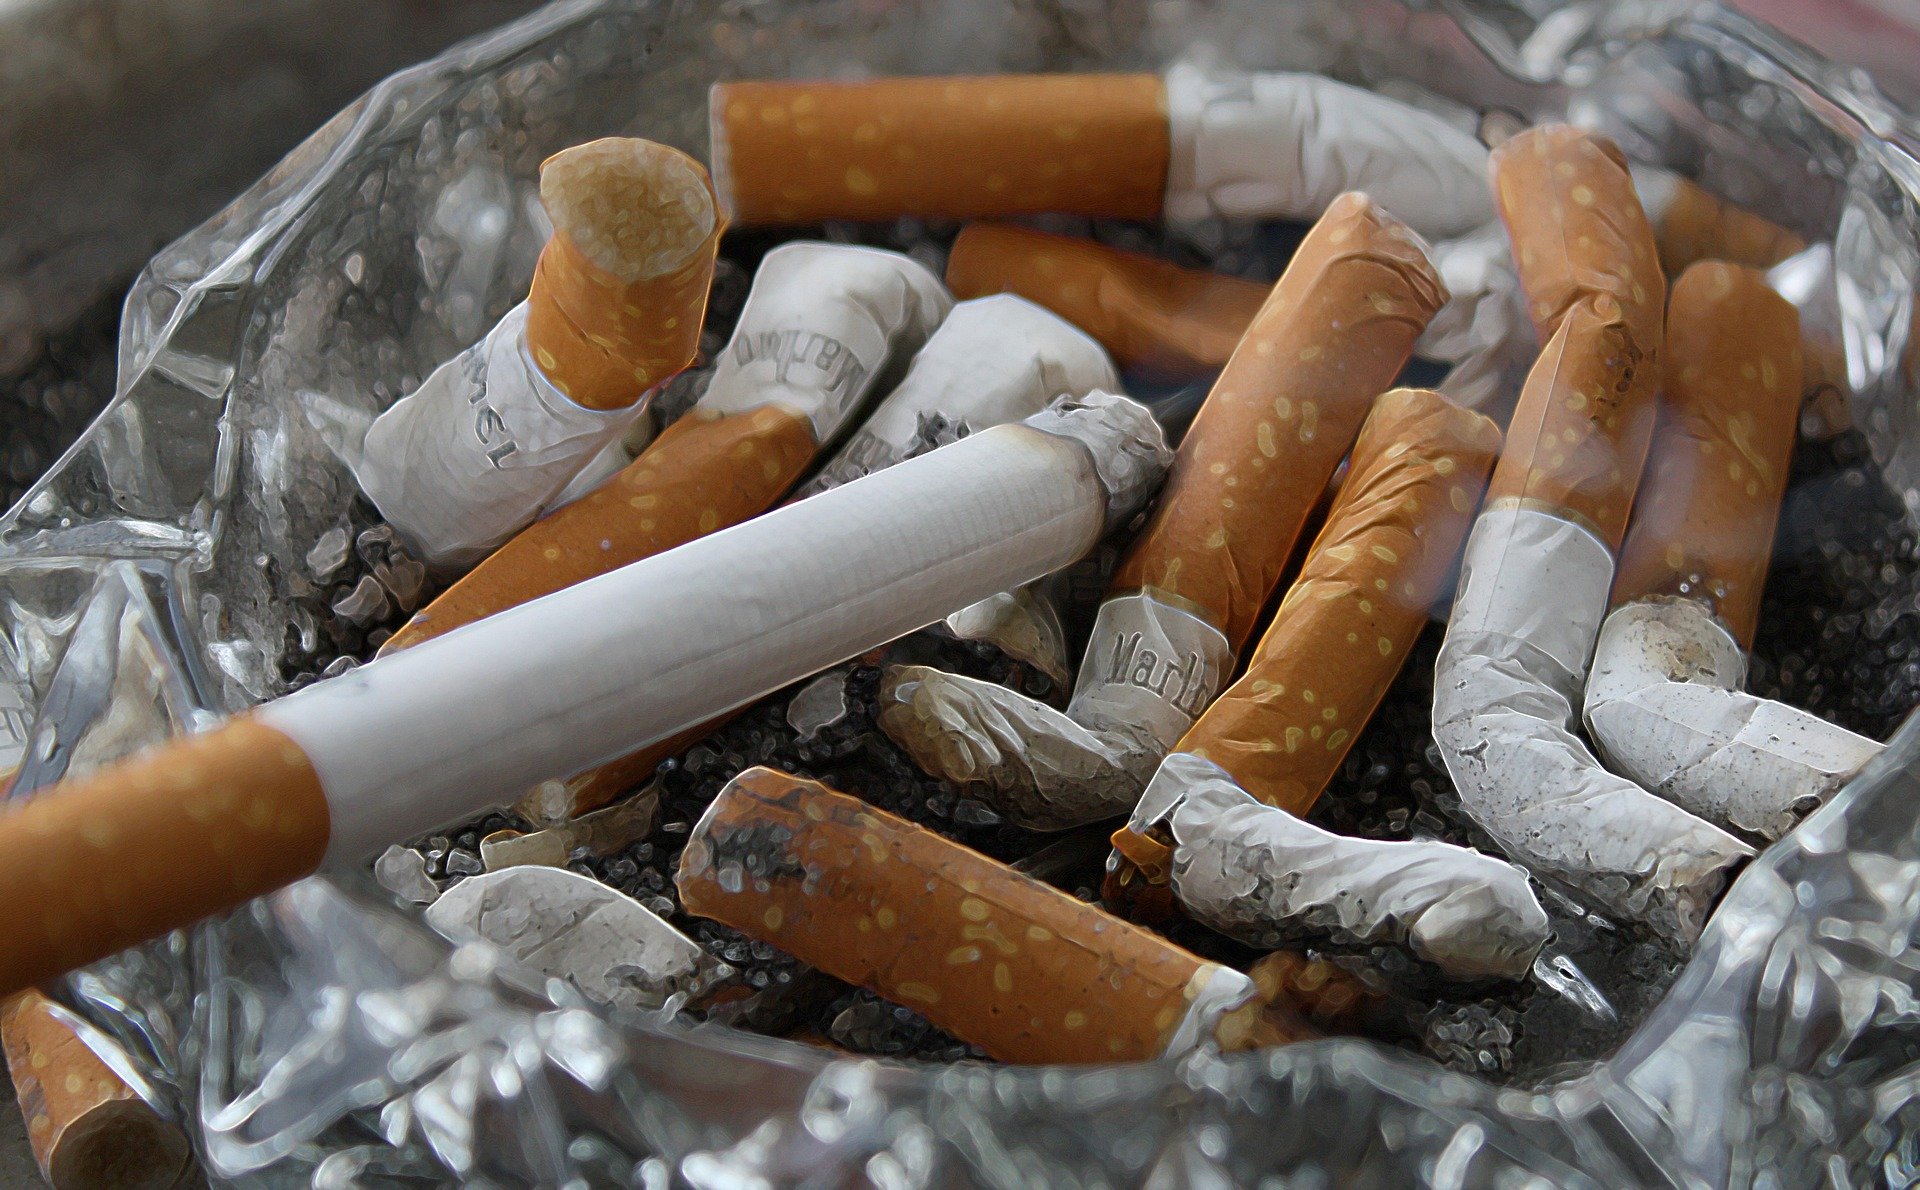 Sanitat finança el Todacitan, un nou fàrmac per deixar de fumar: com és el tractament?